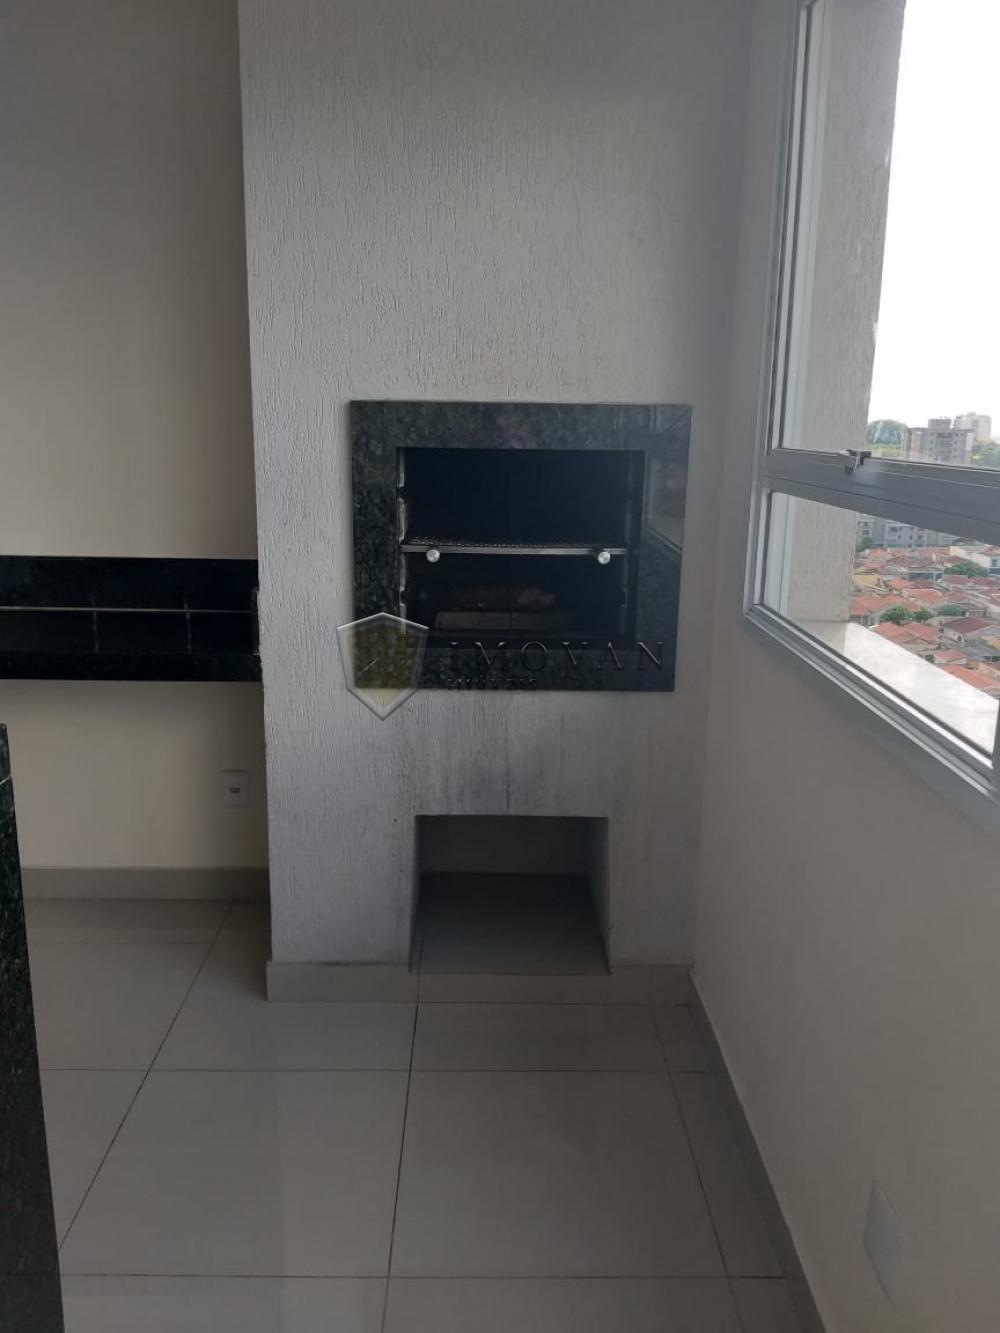 Comprar Apartamento / Padrão em Ribeirão Preto R$ 285.000,00 - Foto 3